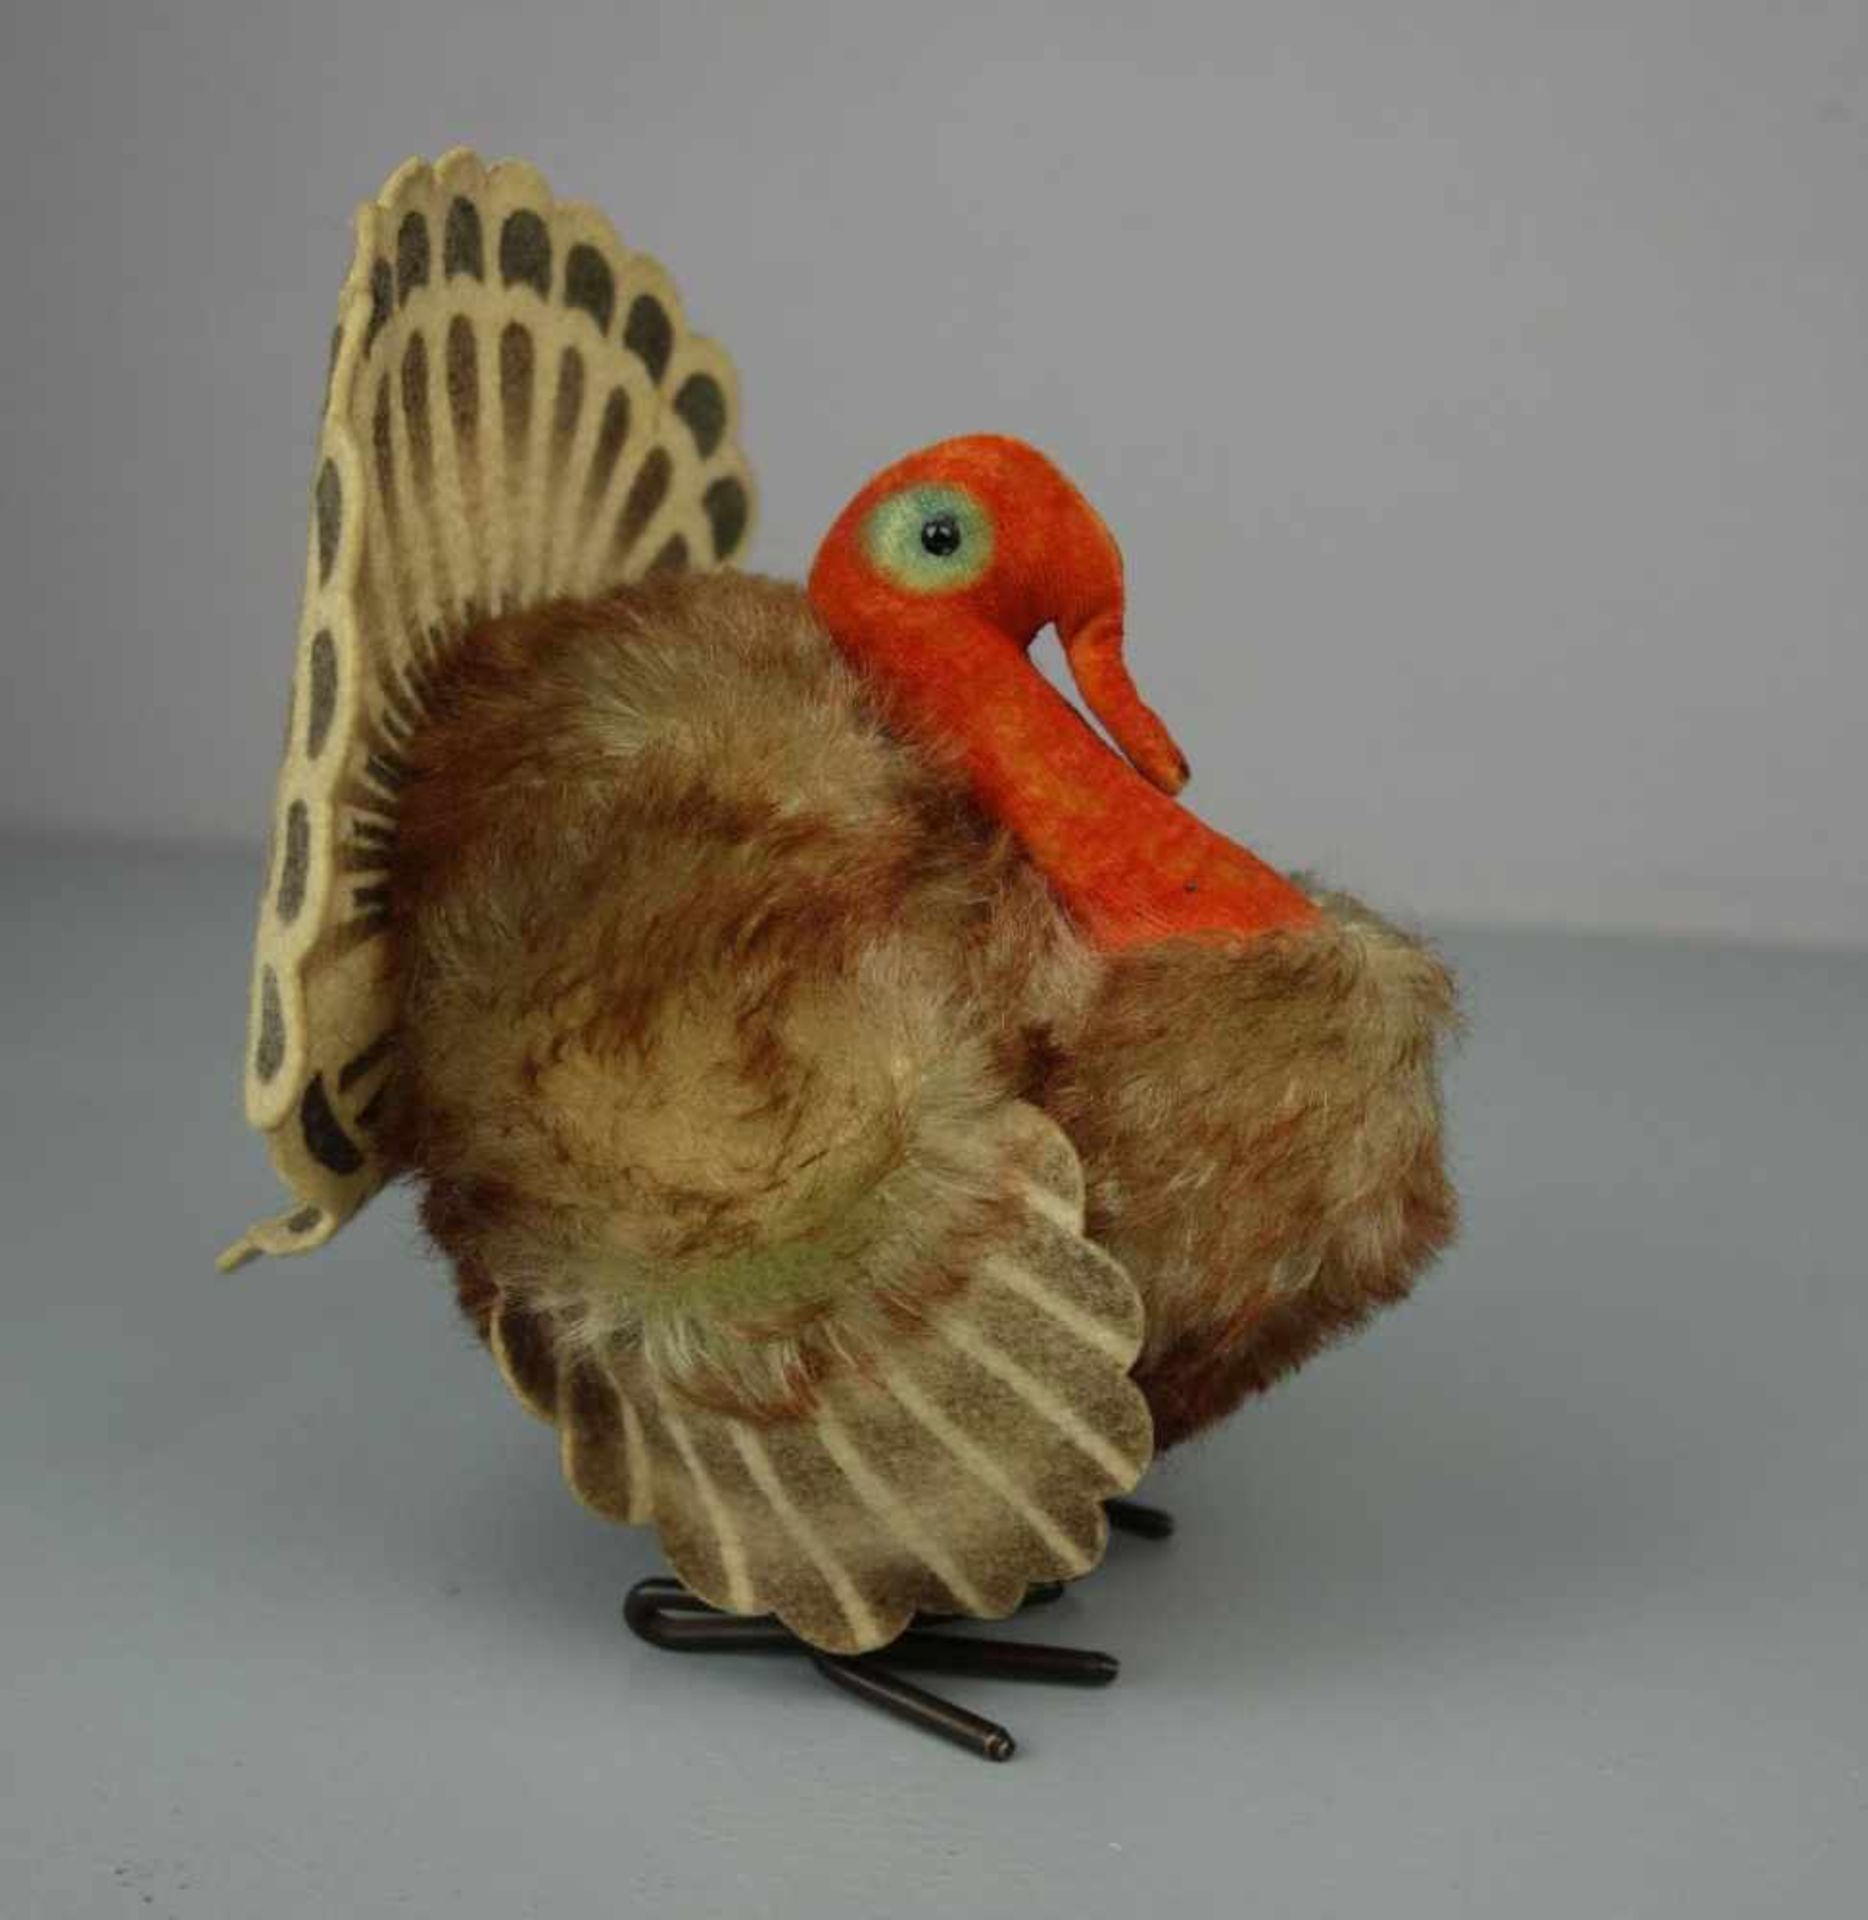 PLÜSCHTIER: STEIFF TRUTHAHN "Tucky" / fluffy turkey, wohl 1960er Jahre, Mohair/Filz und - Bild 4 aus 6